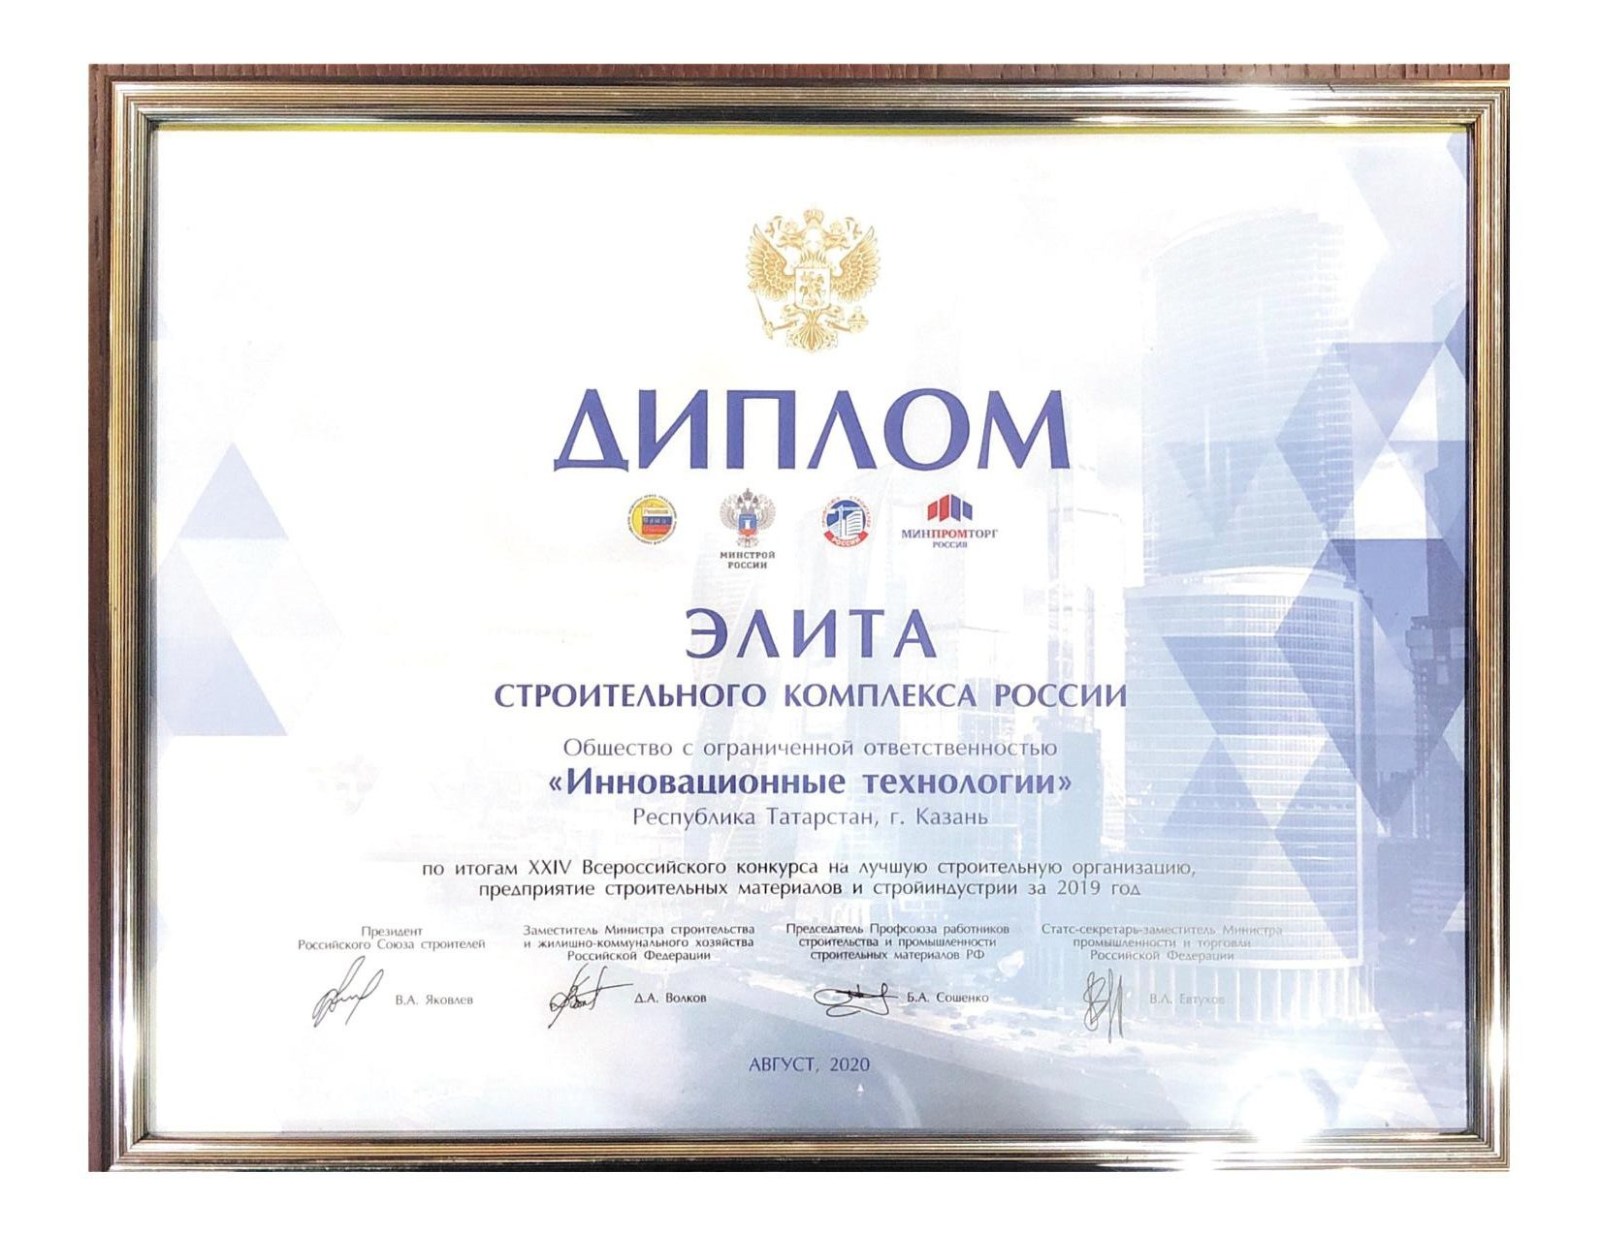 Группа компаний INN-T GROUP одержала победу XXIV Всероссийского конкурса на лучшую строительную организацию, предприятие строительных материалов и стройиндустрии за 2019 год